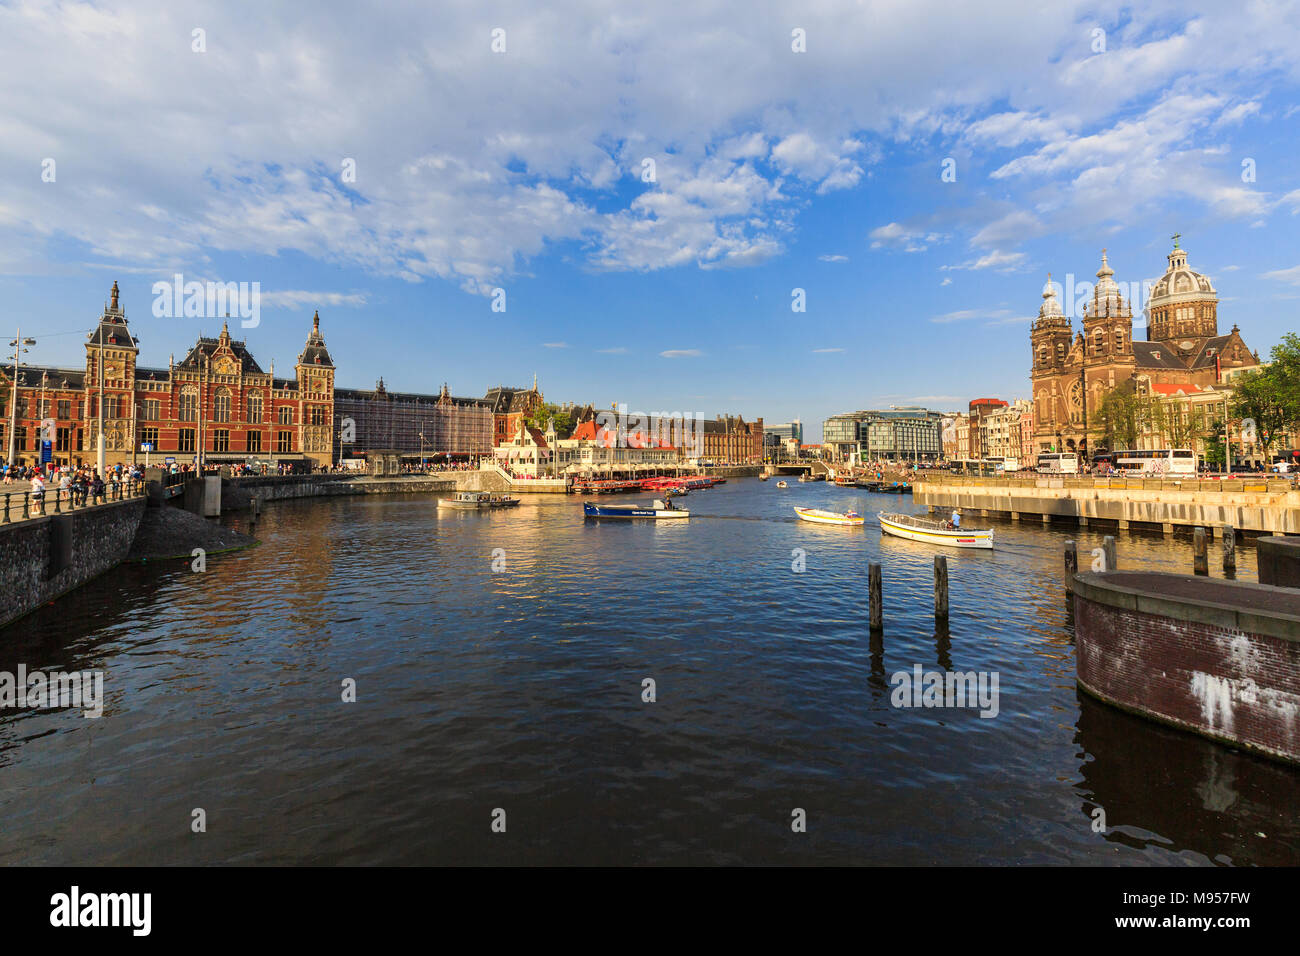 AMSTERDAM, Paesi Bassi - 27 Maggio 2017: Vista della cattedrale Sint-Nicolaaskerk e la principale stazione ferroviaria Amsterdam Centraal il 27 maggio 2017. Il suo basso Foto Stock